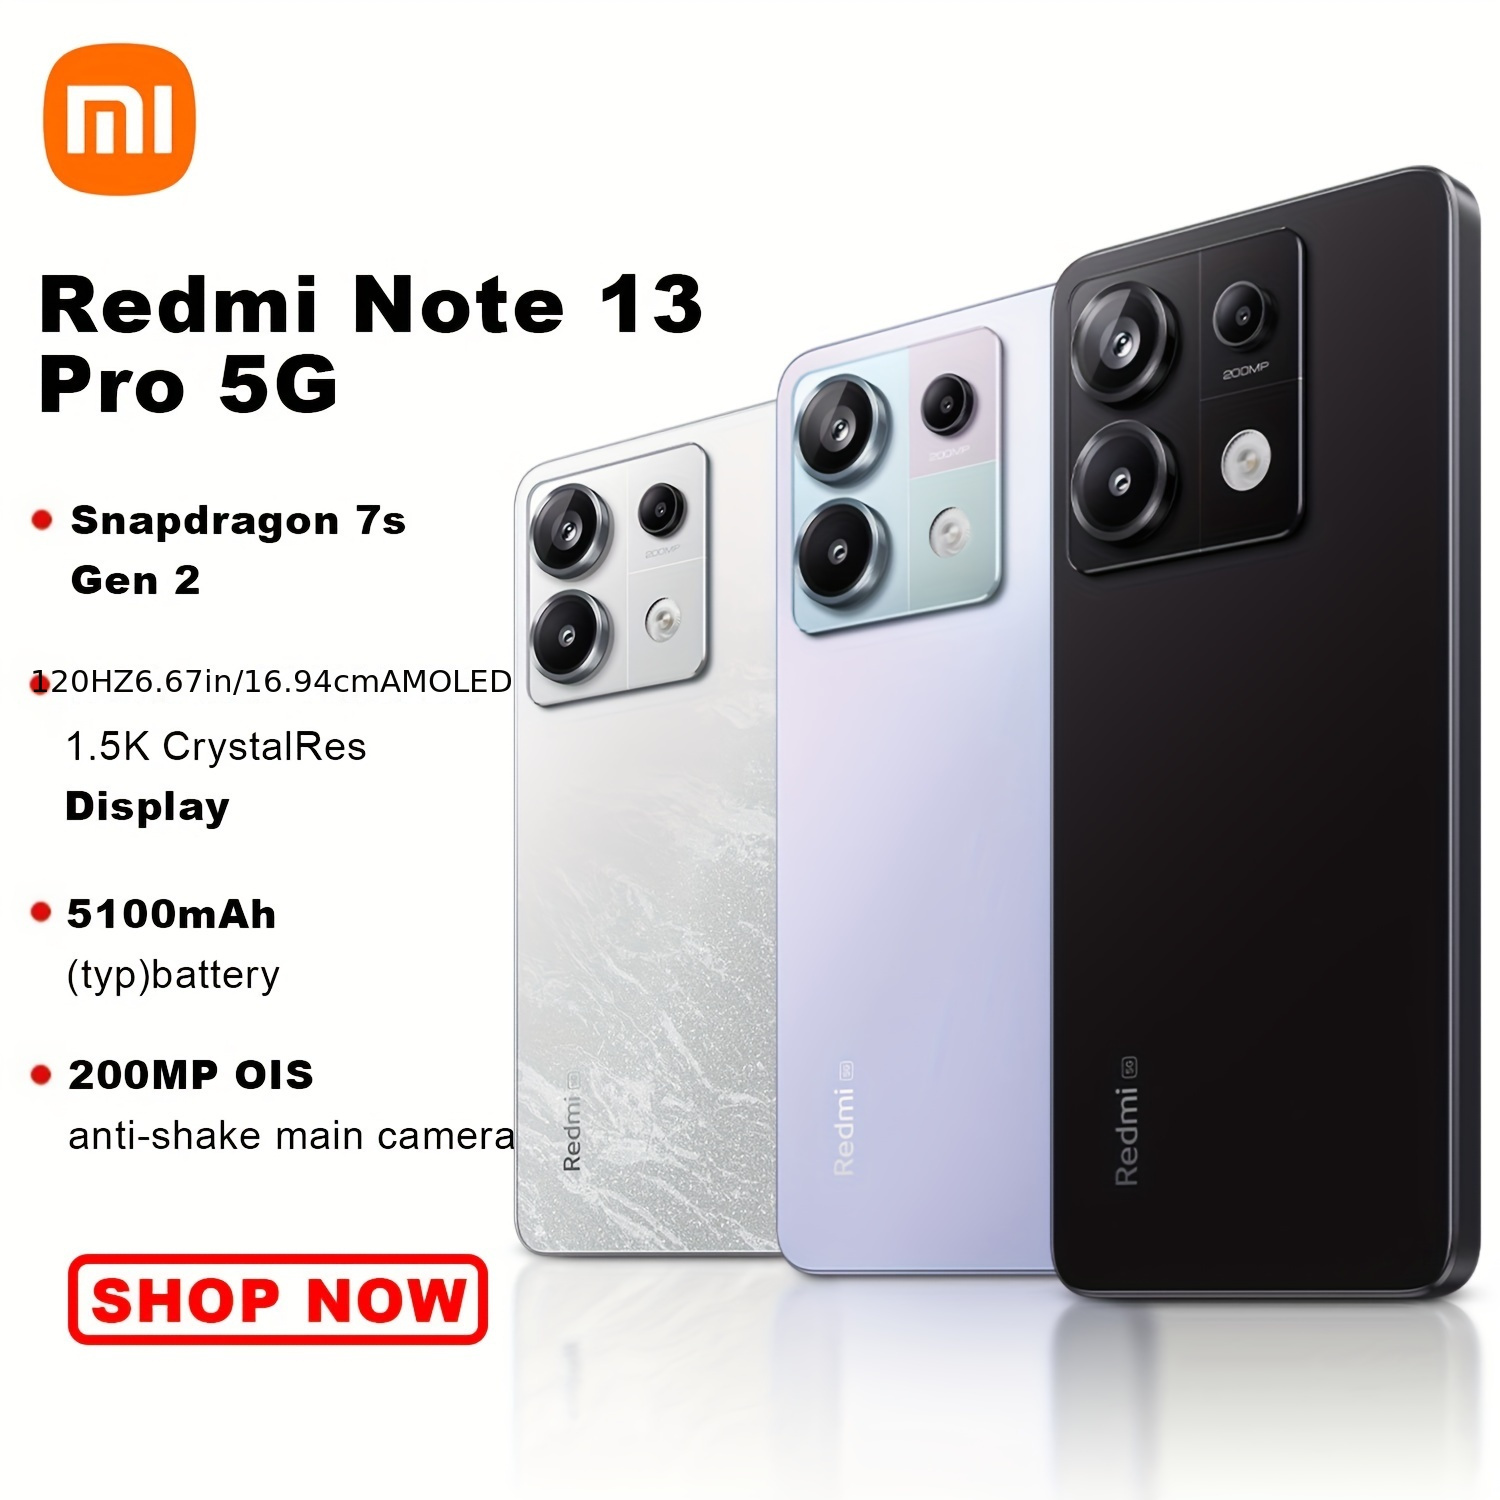 XIAOMI Redmi Note 12 5G (8GB+256GB) 6.67 AMOLED l Snapdragon® 4 Gen 1 l  5000mAh 33W Fast Charging